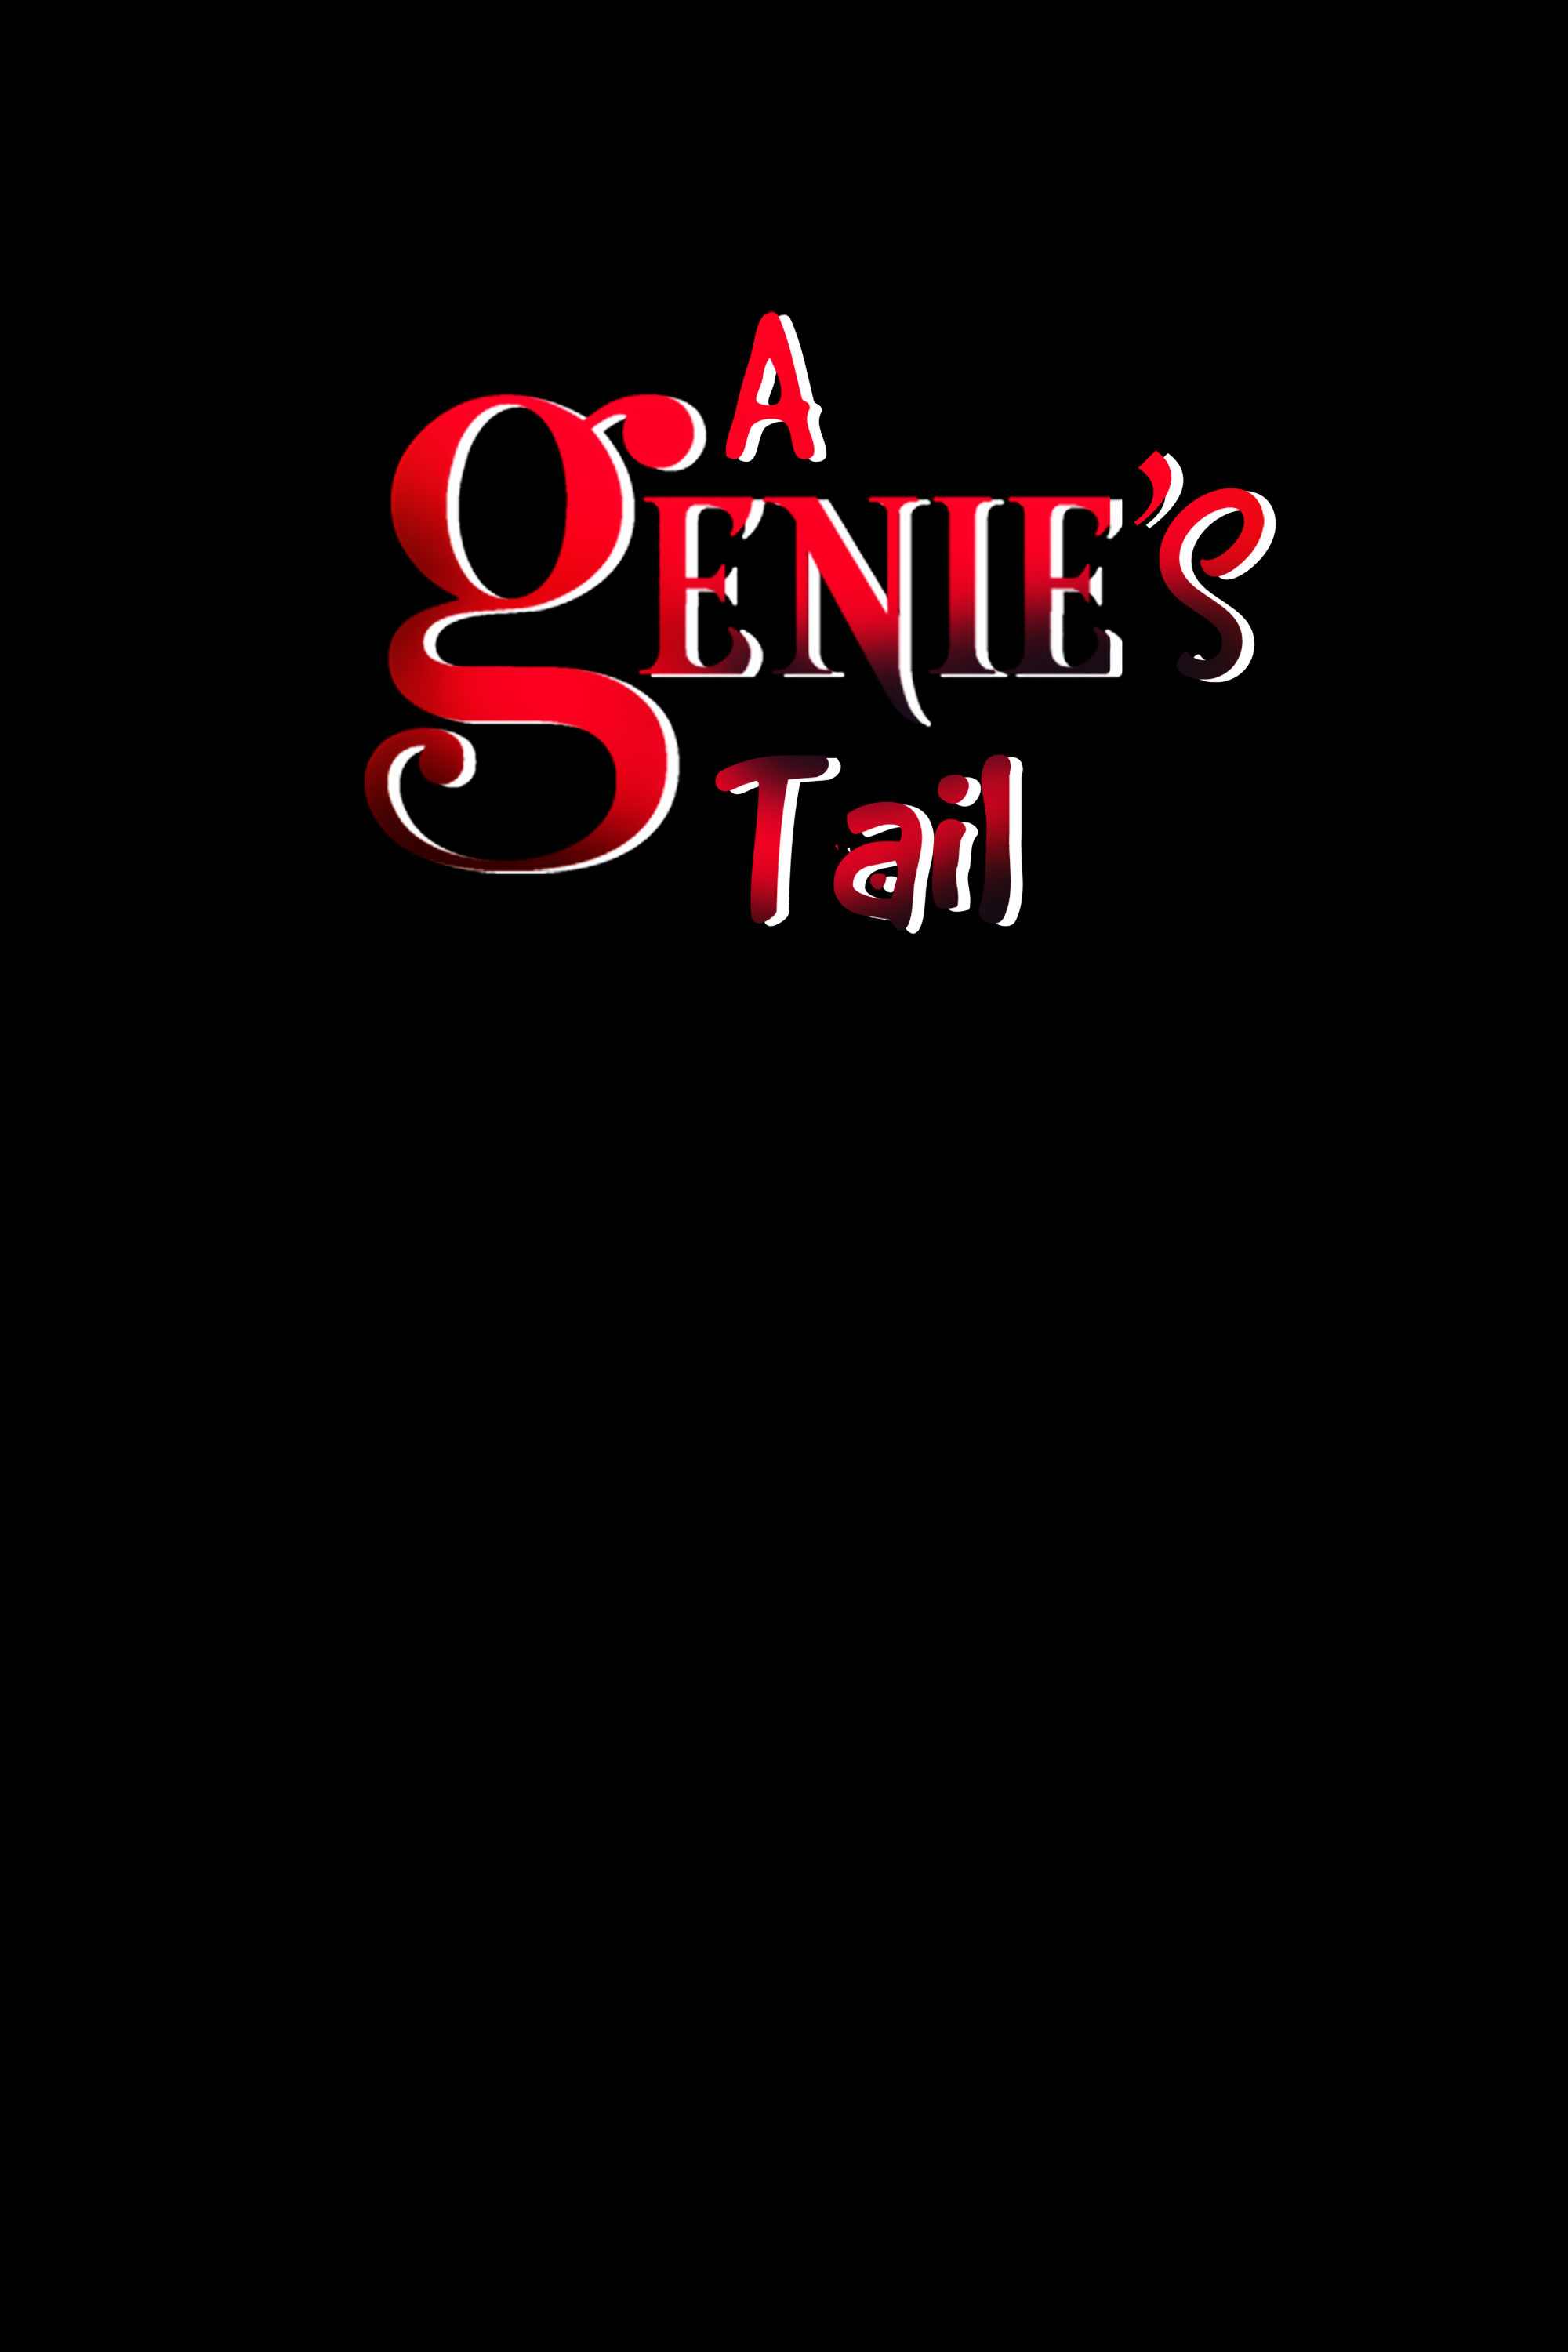 A Genie's Tail